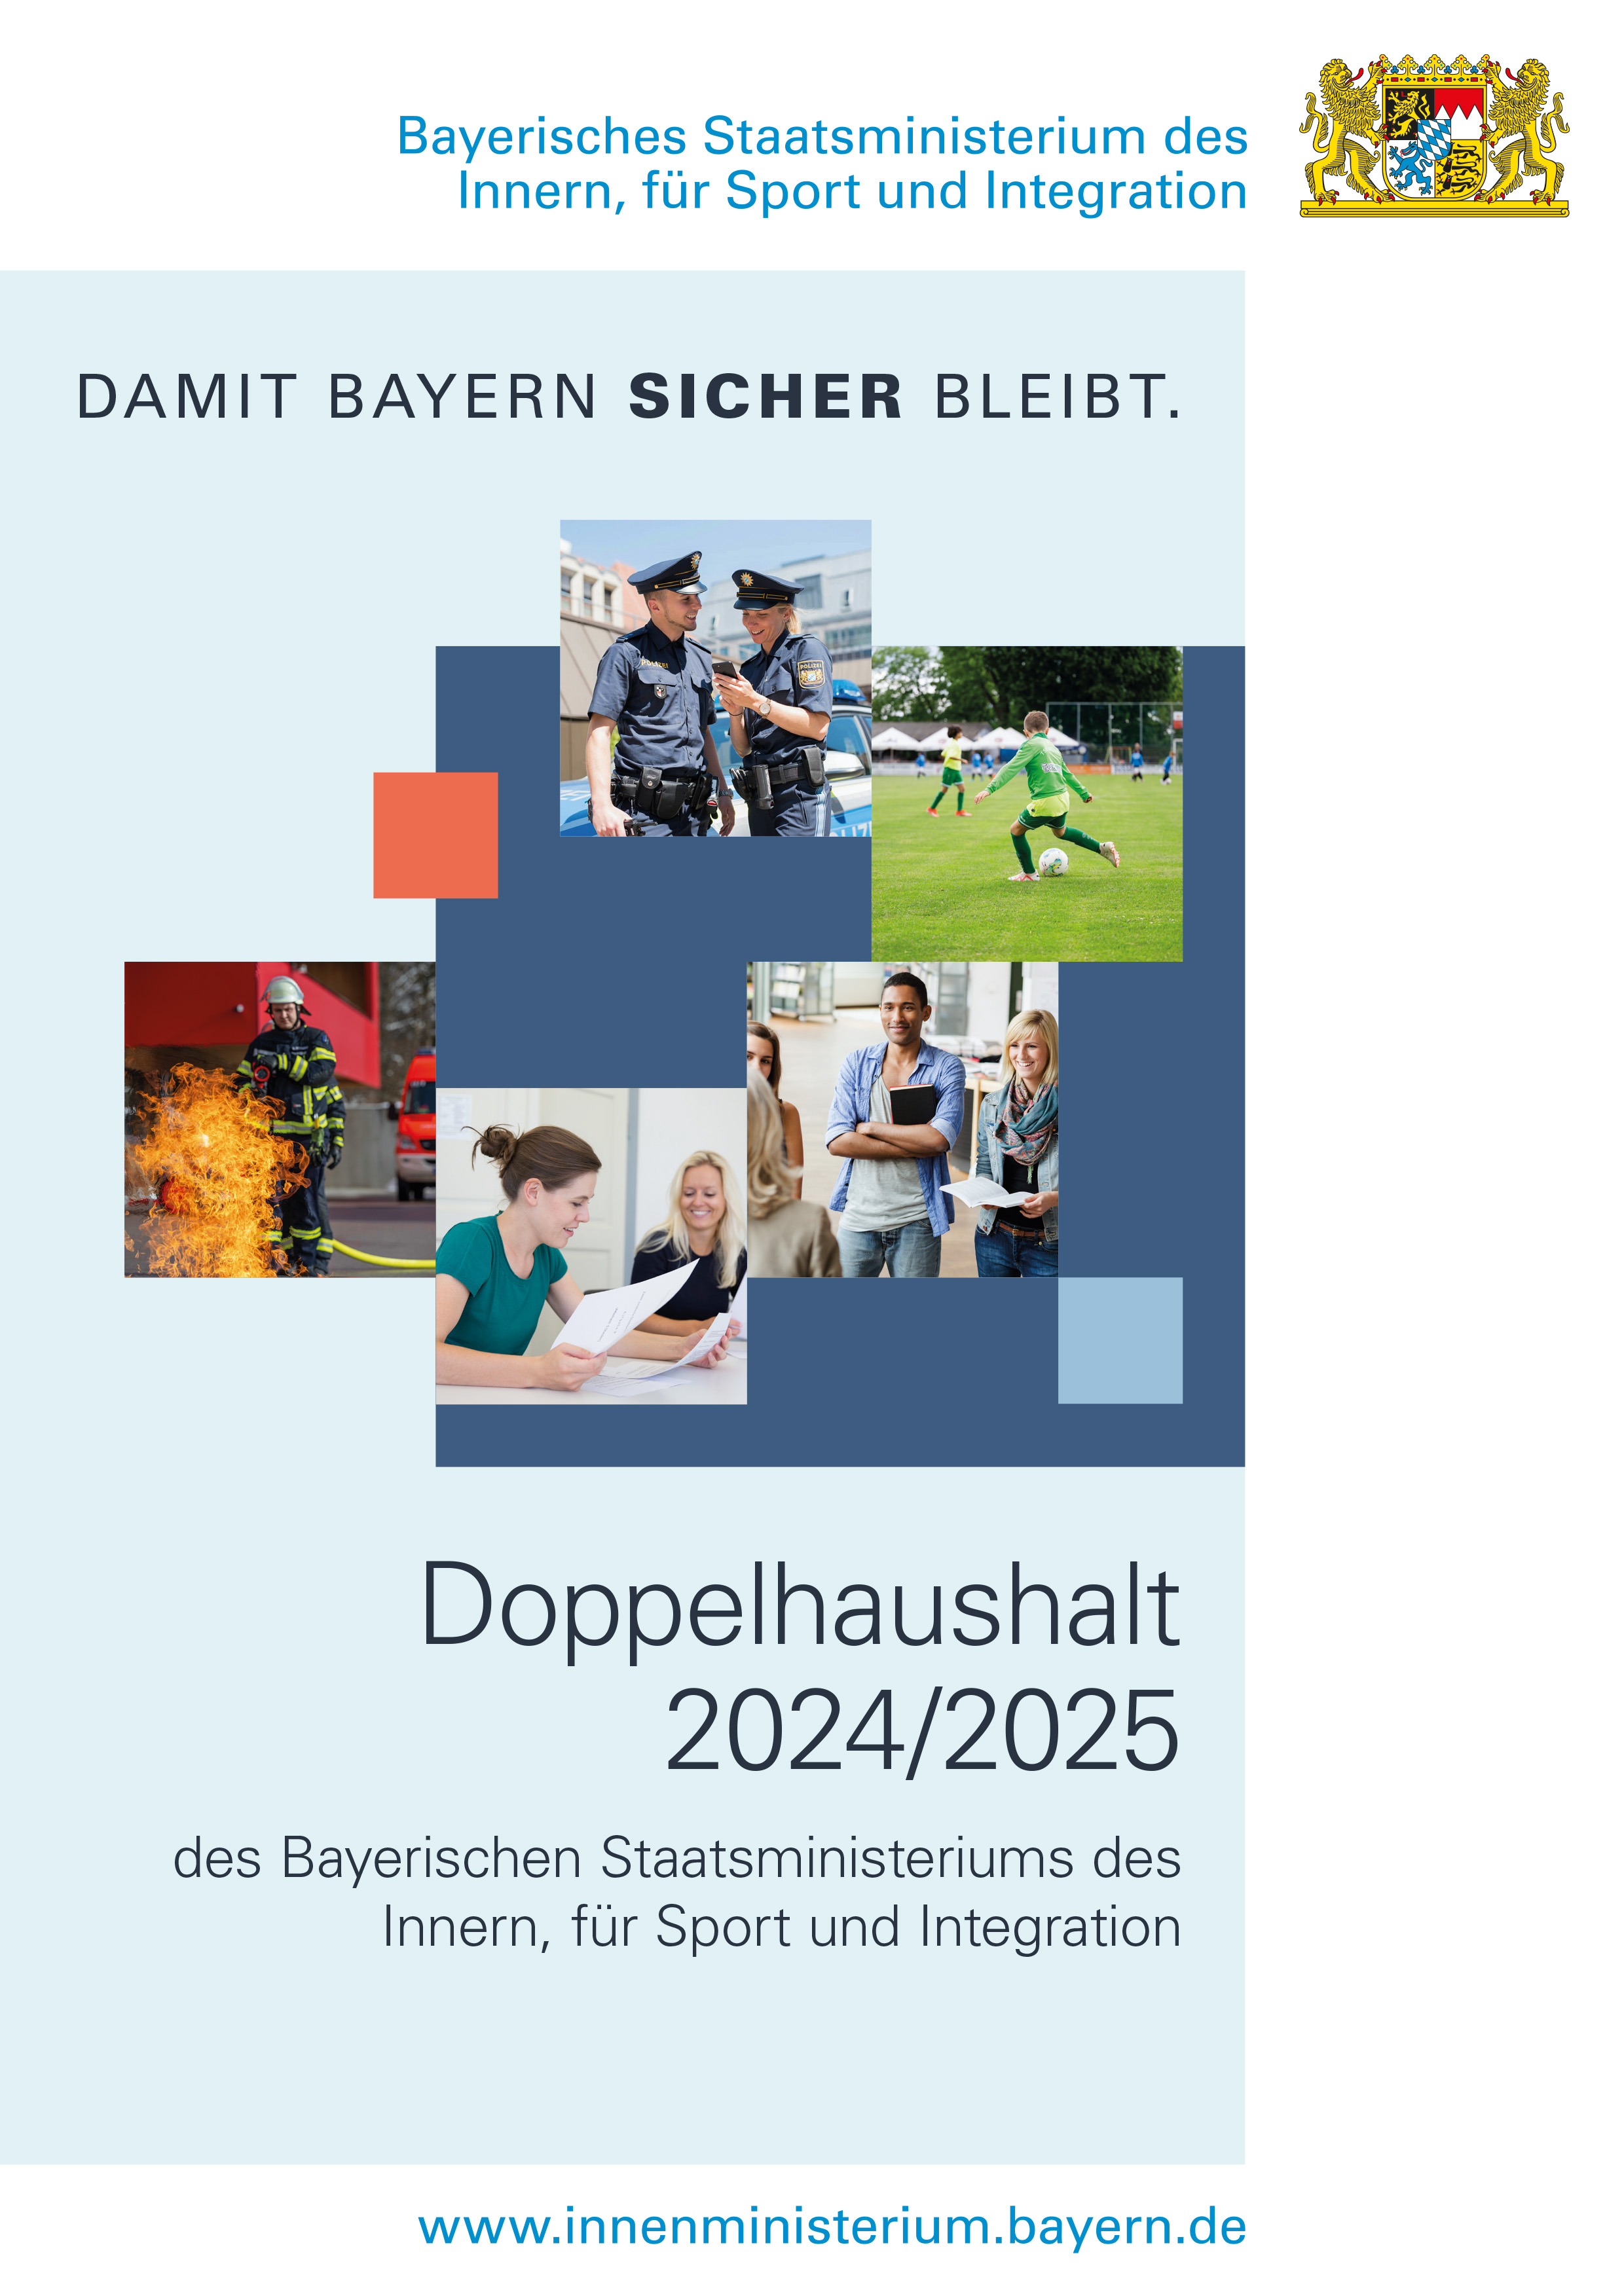 Doppelhaushalt 2024/2025 des Bayerischen Innenministeriums